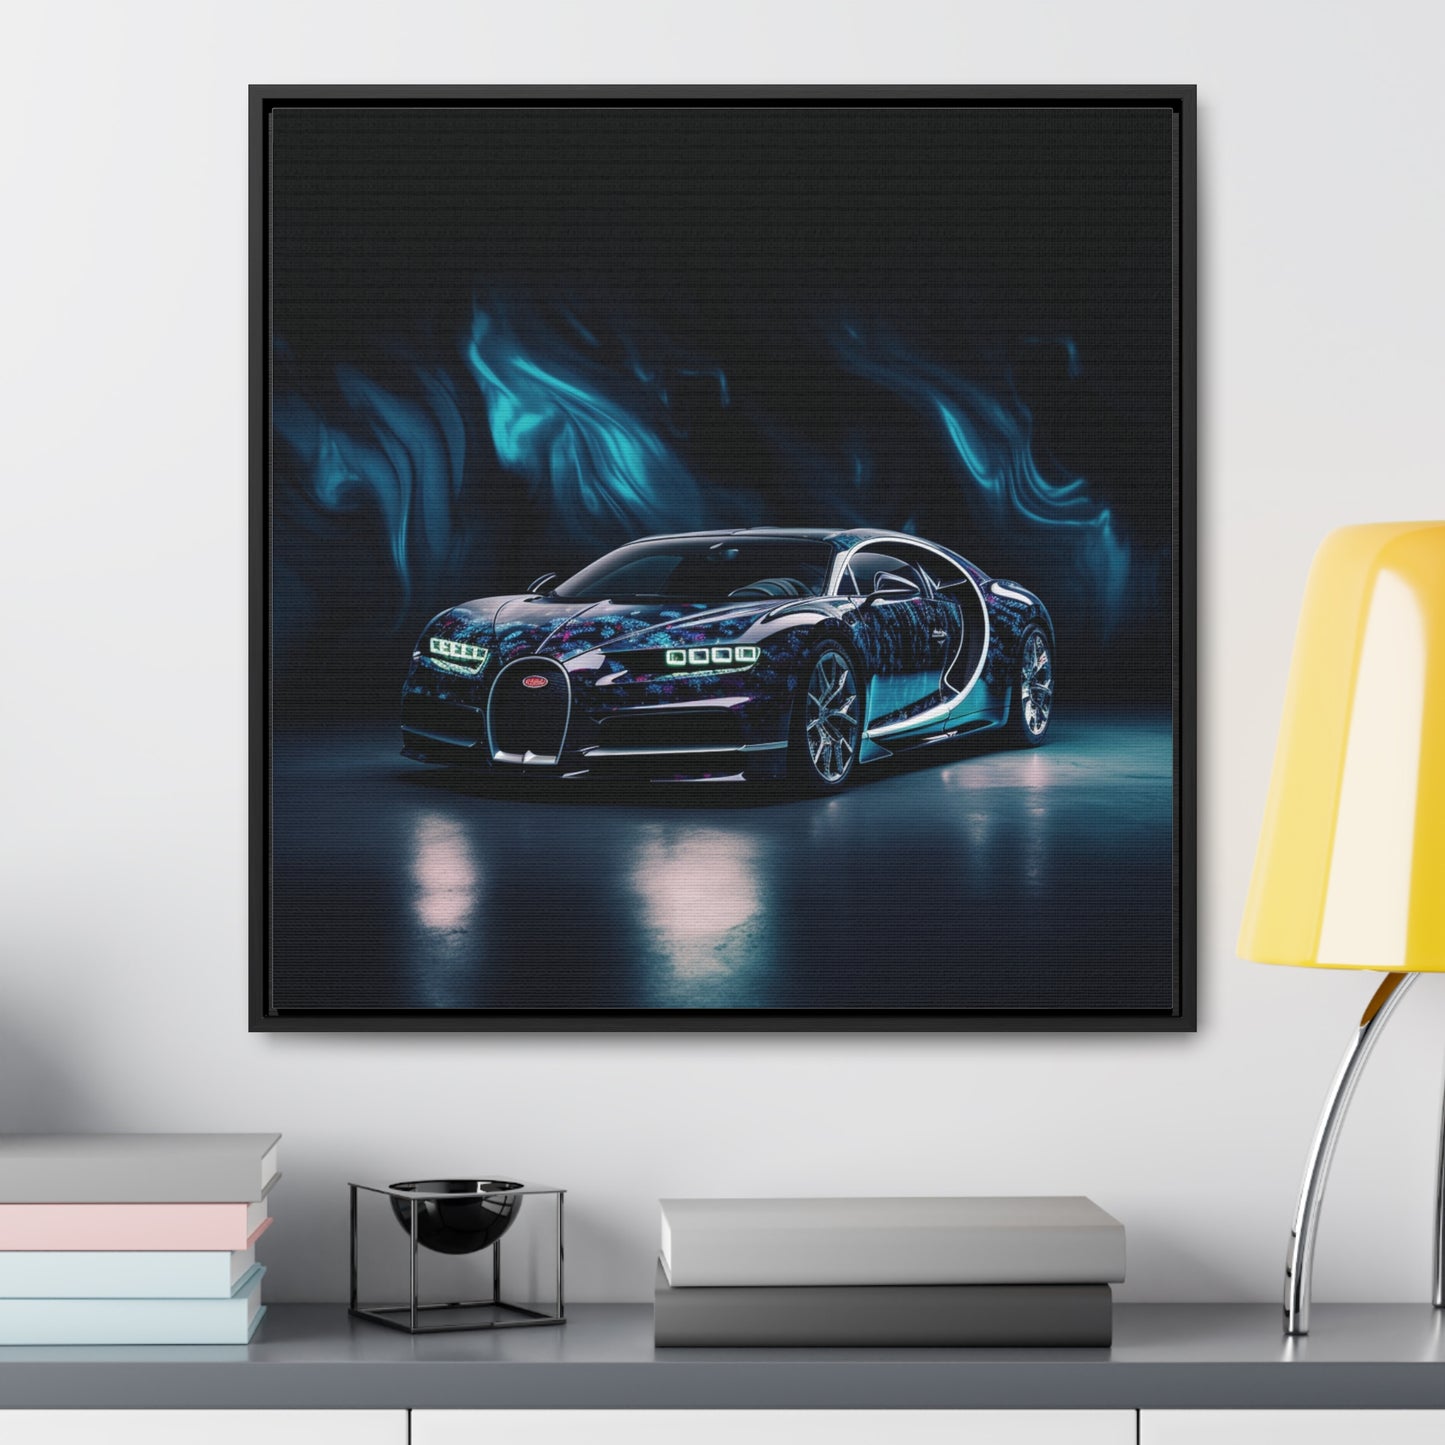 Gallery Canvas Wraps, Square Frame Hyper Bugatti 1